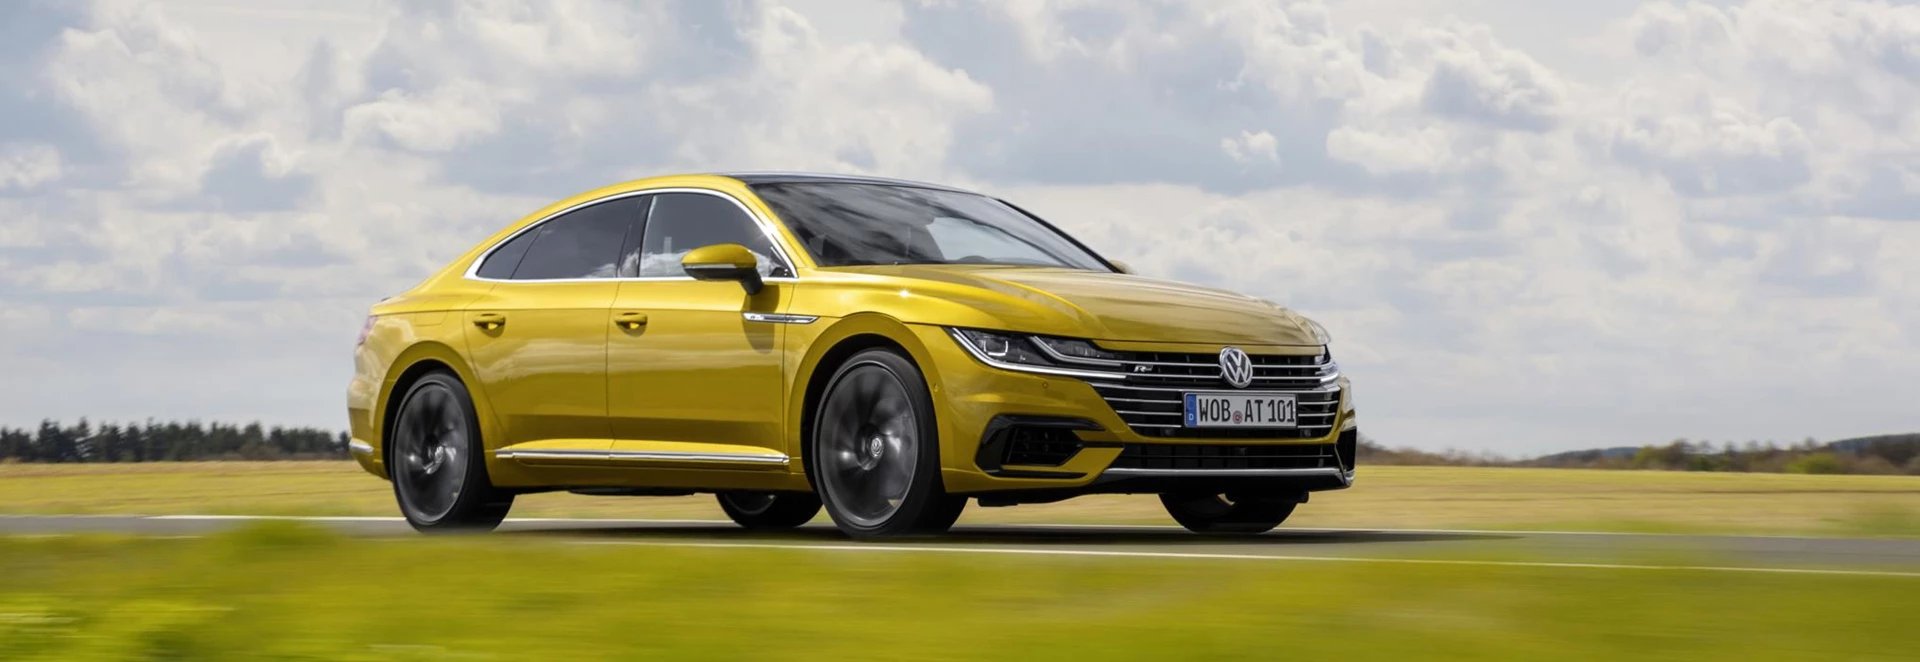 Volkswagen Arteon pricing details confirmed 